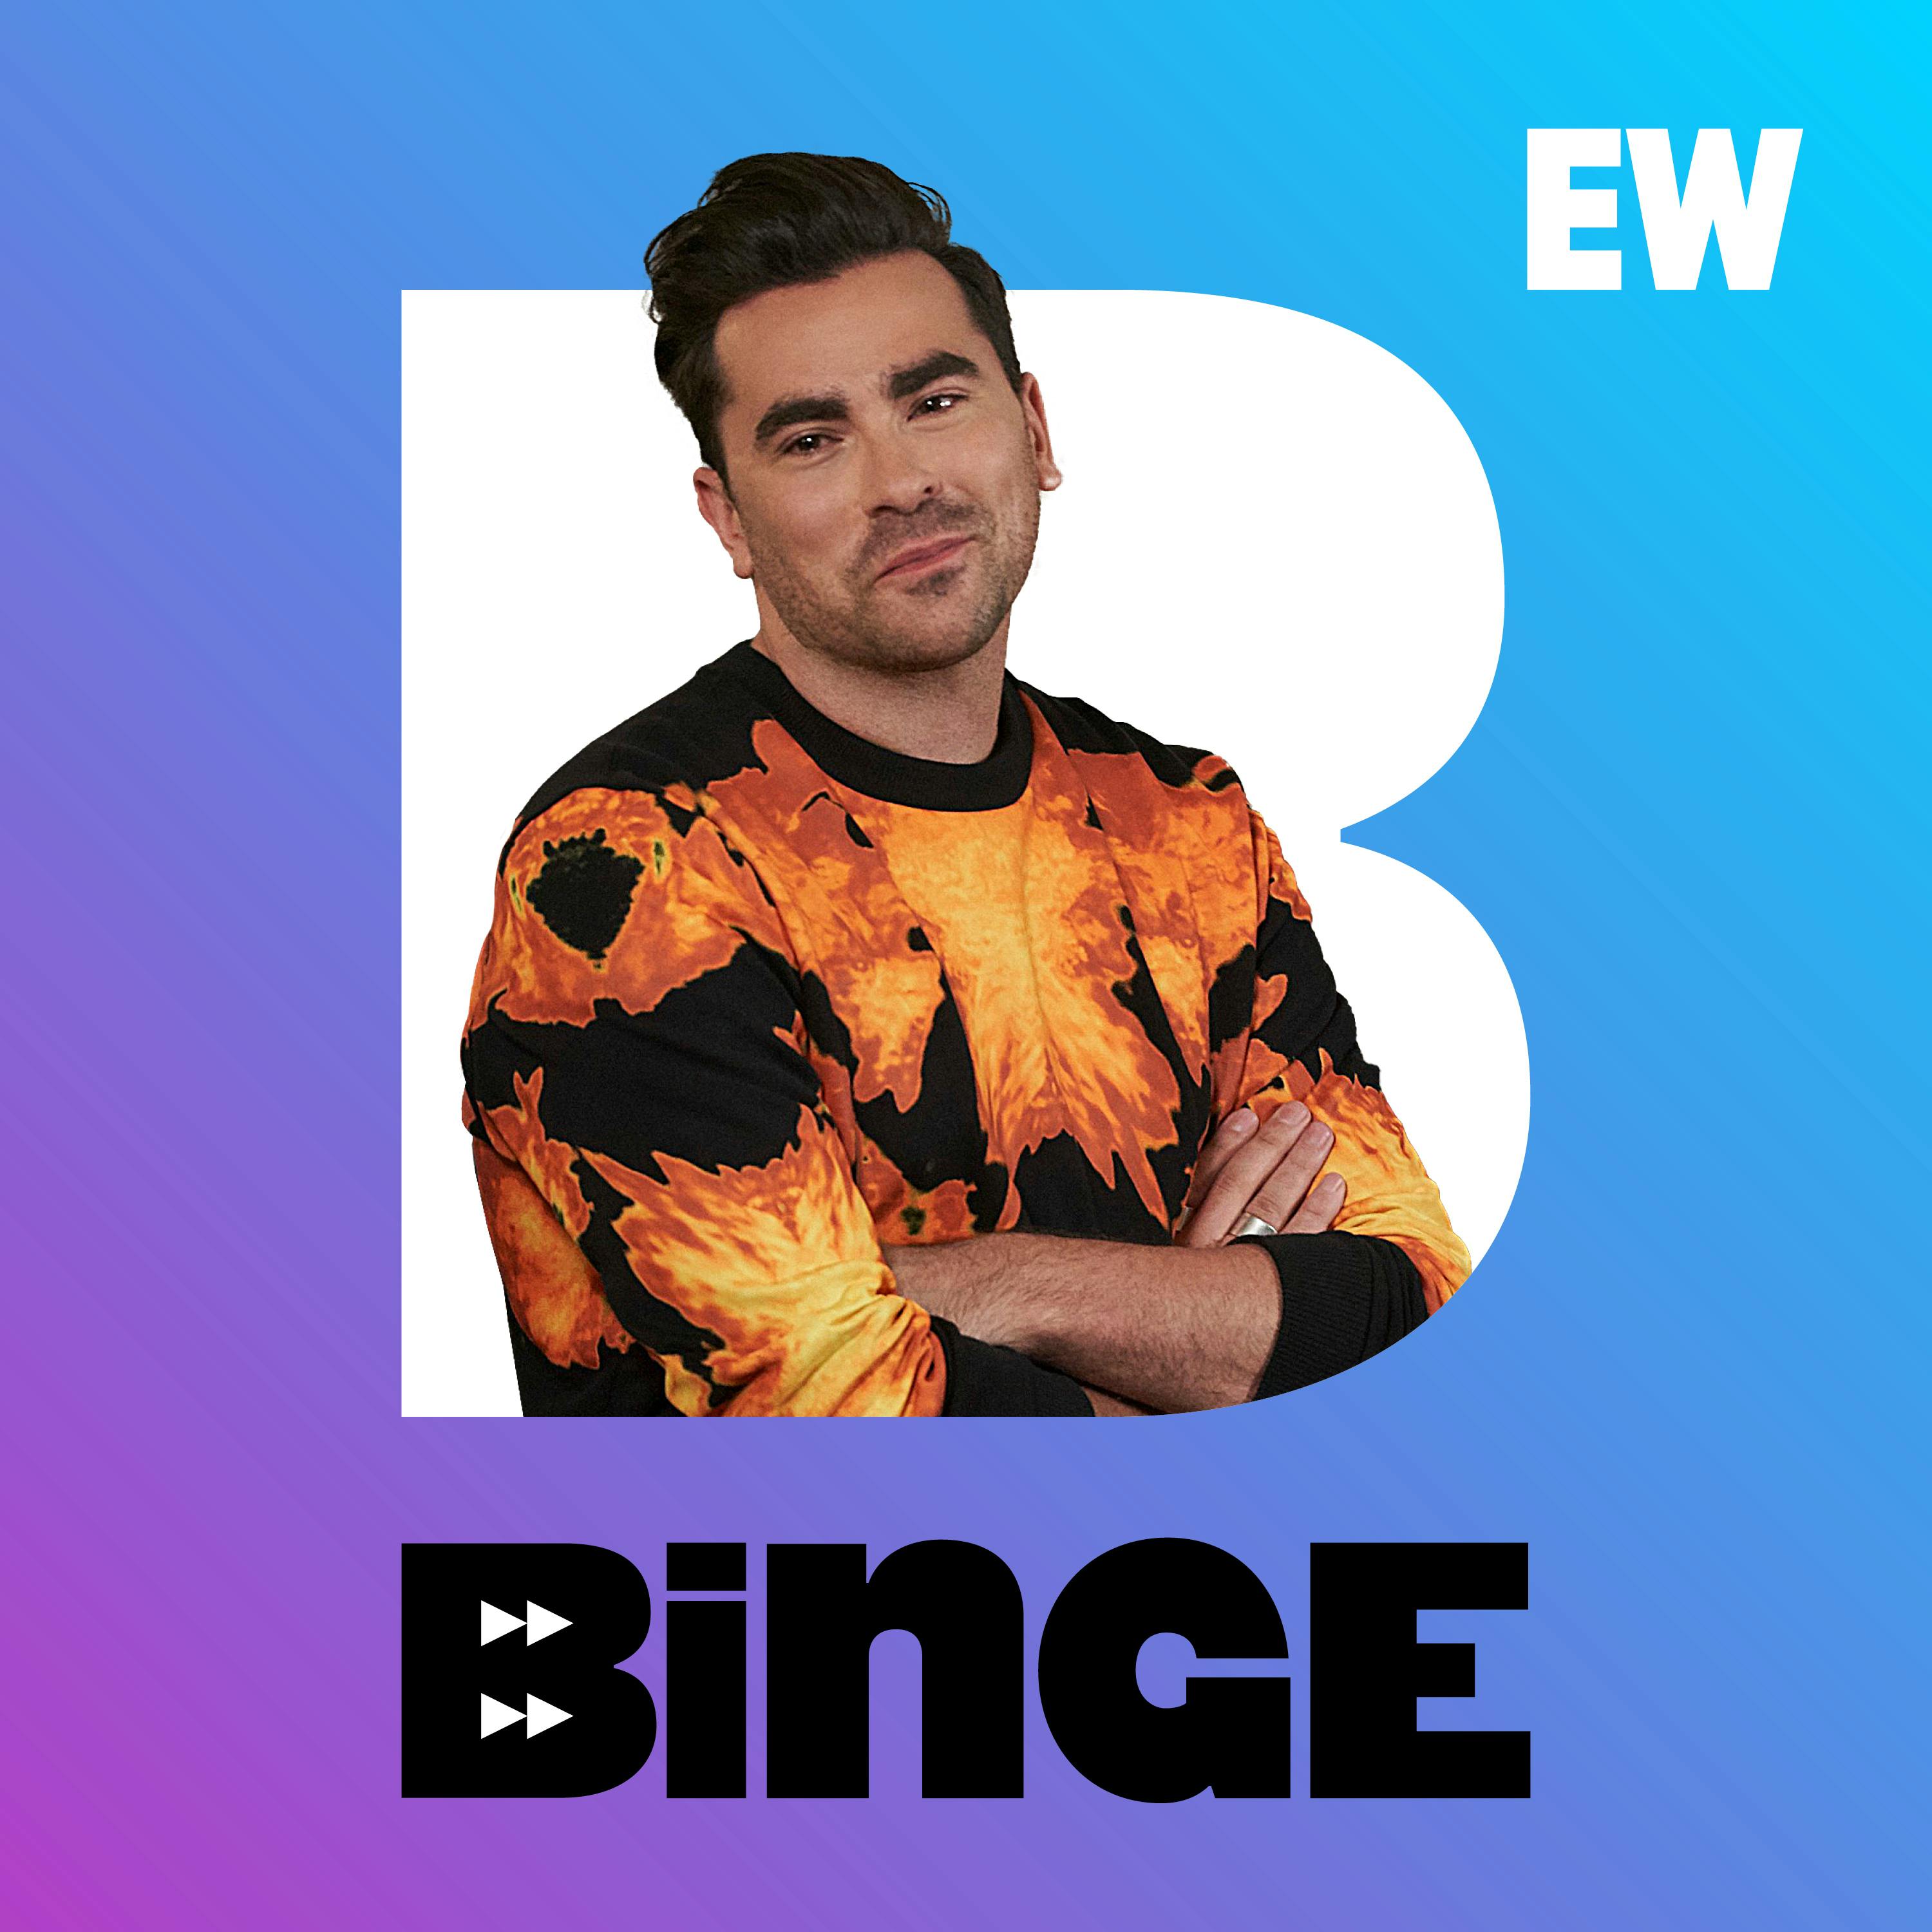 EW's BINGE is up 'Schitt's Creek' for season 3!